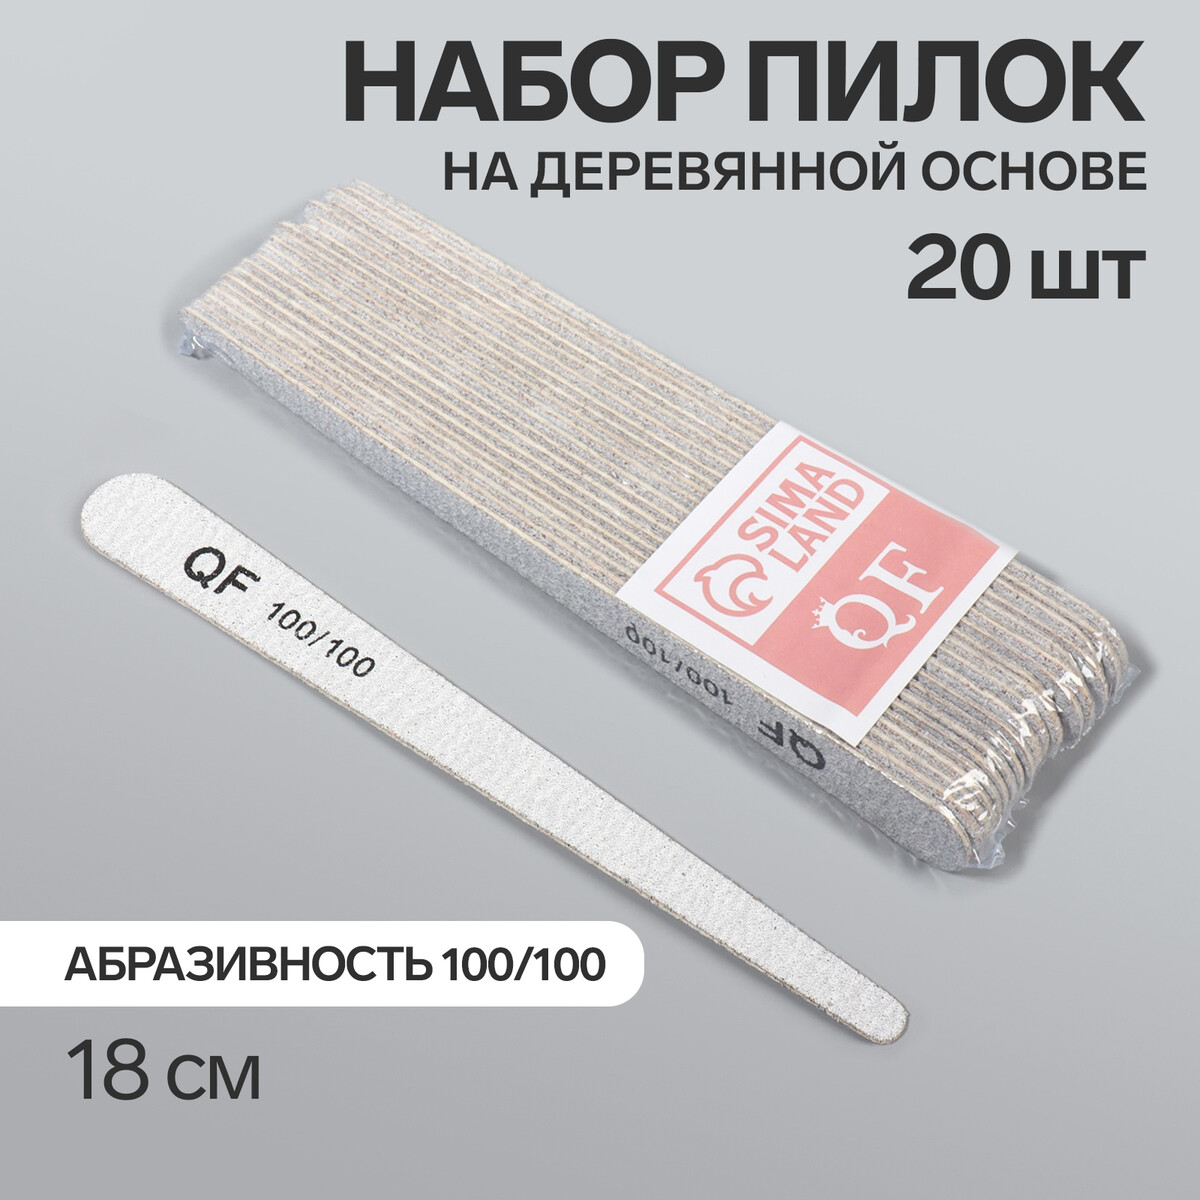 Пилка-наждак, набор 20 шт, деревянная основа, абразивность 100/100, 18 см, цвет серый палка основа для макраме деревянная без покрытия d 1 5 × 40 см